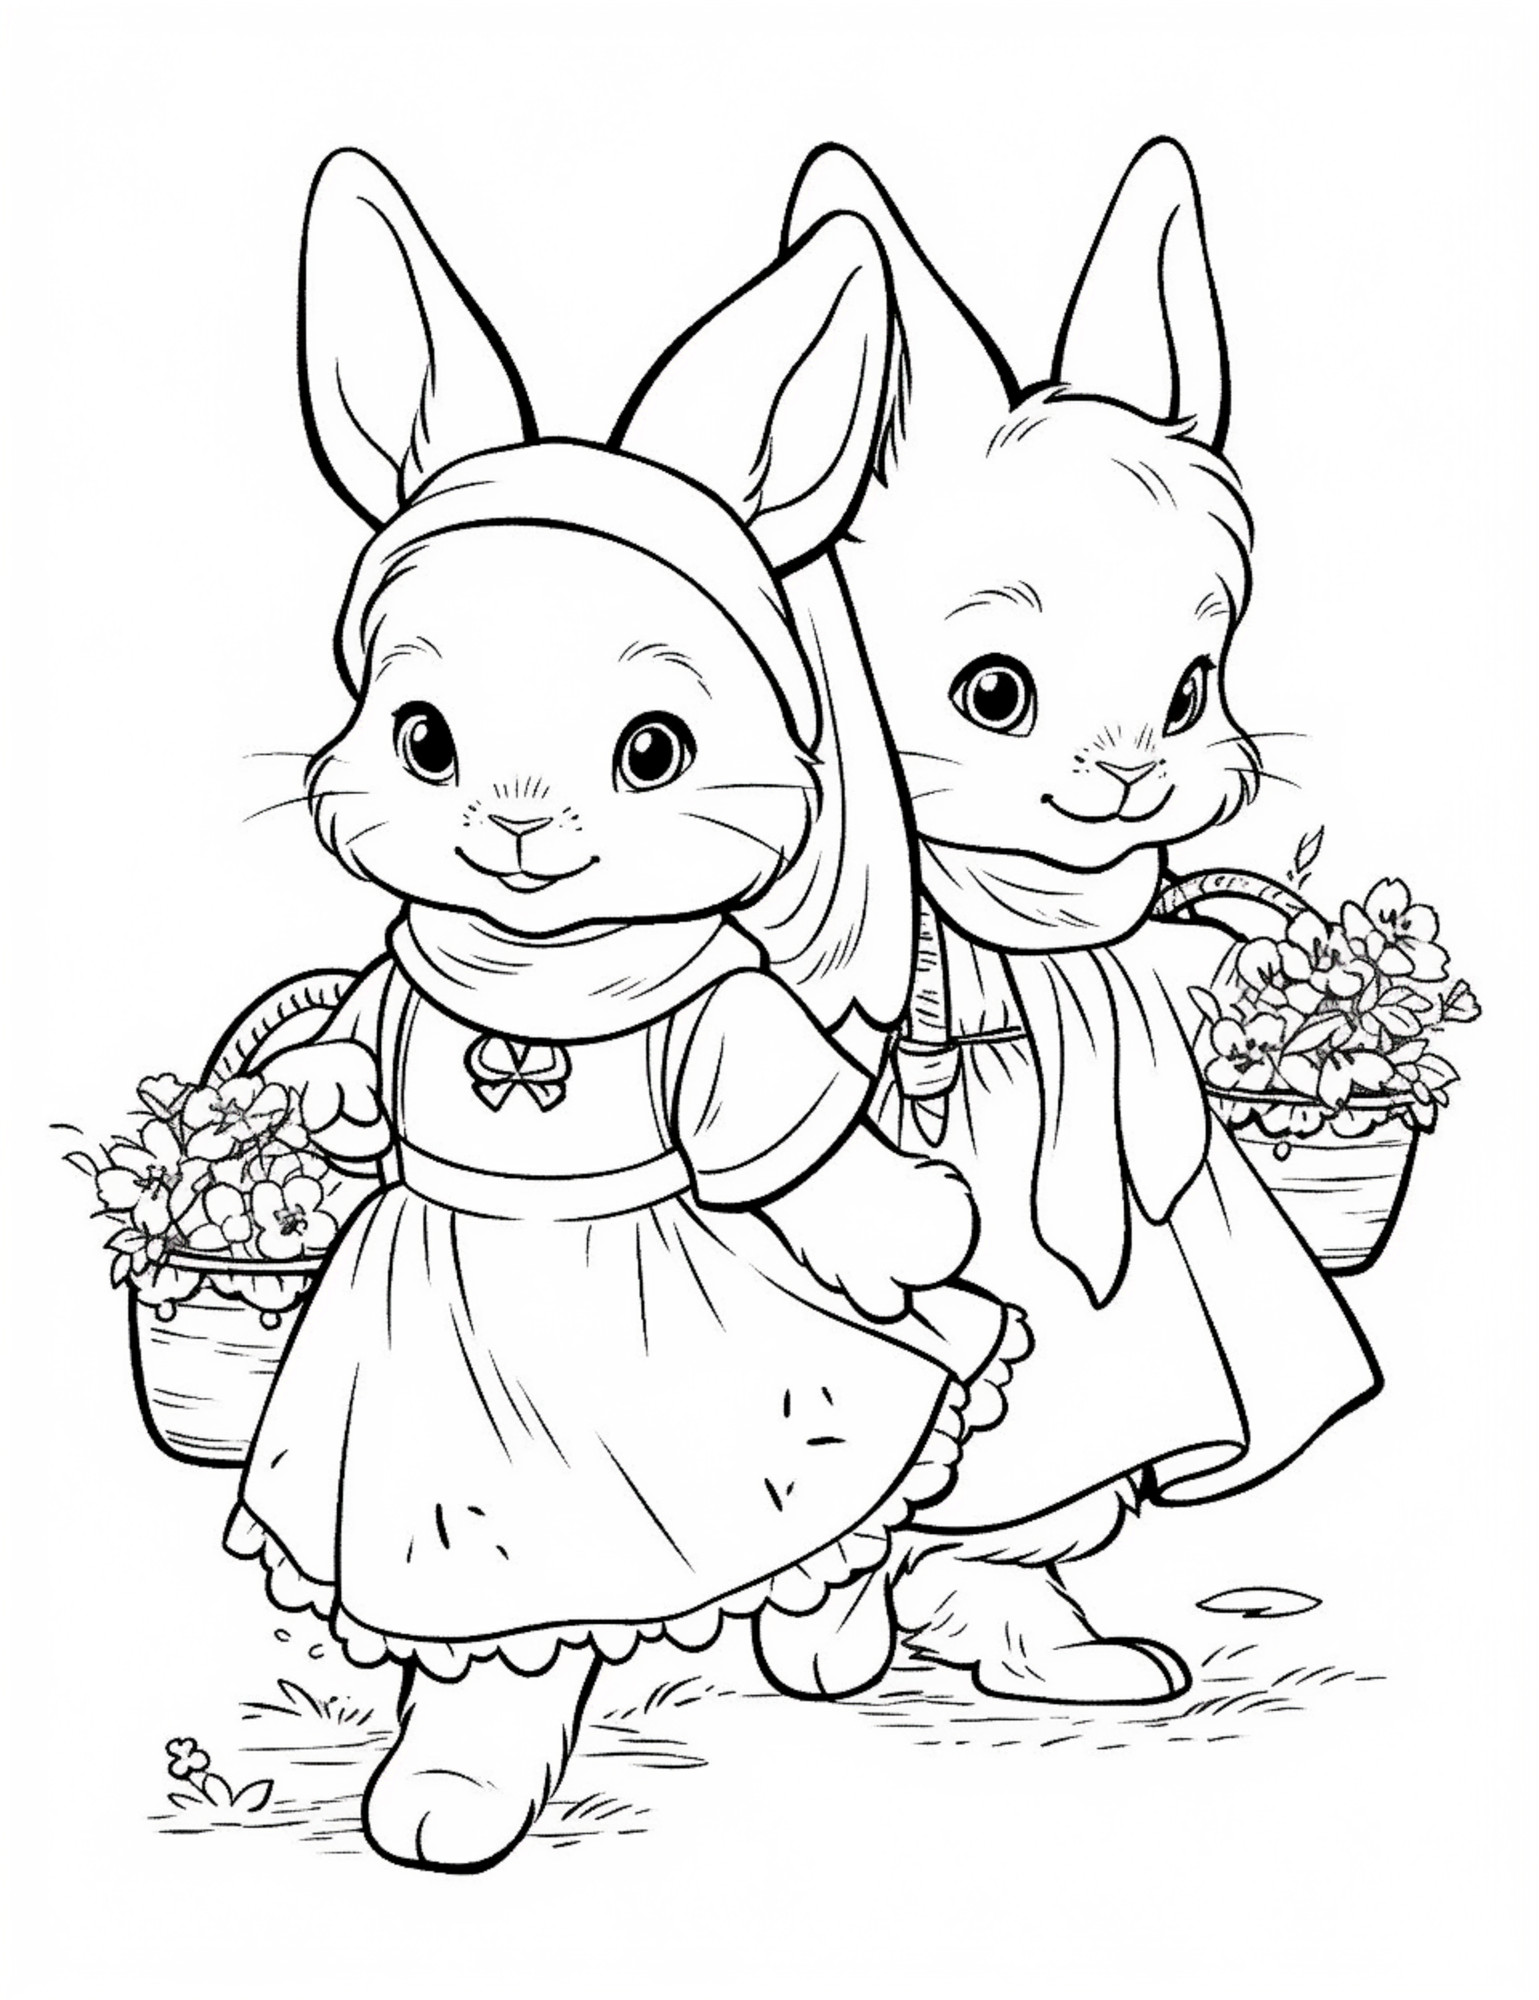 Раскраска для детей: сказочные крольчата с корзинками цветов